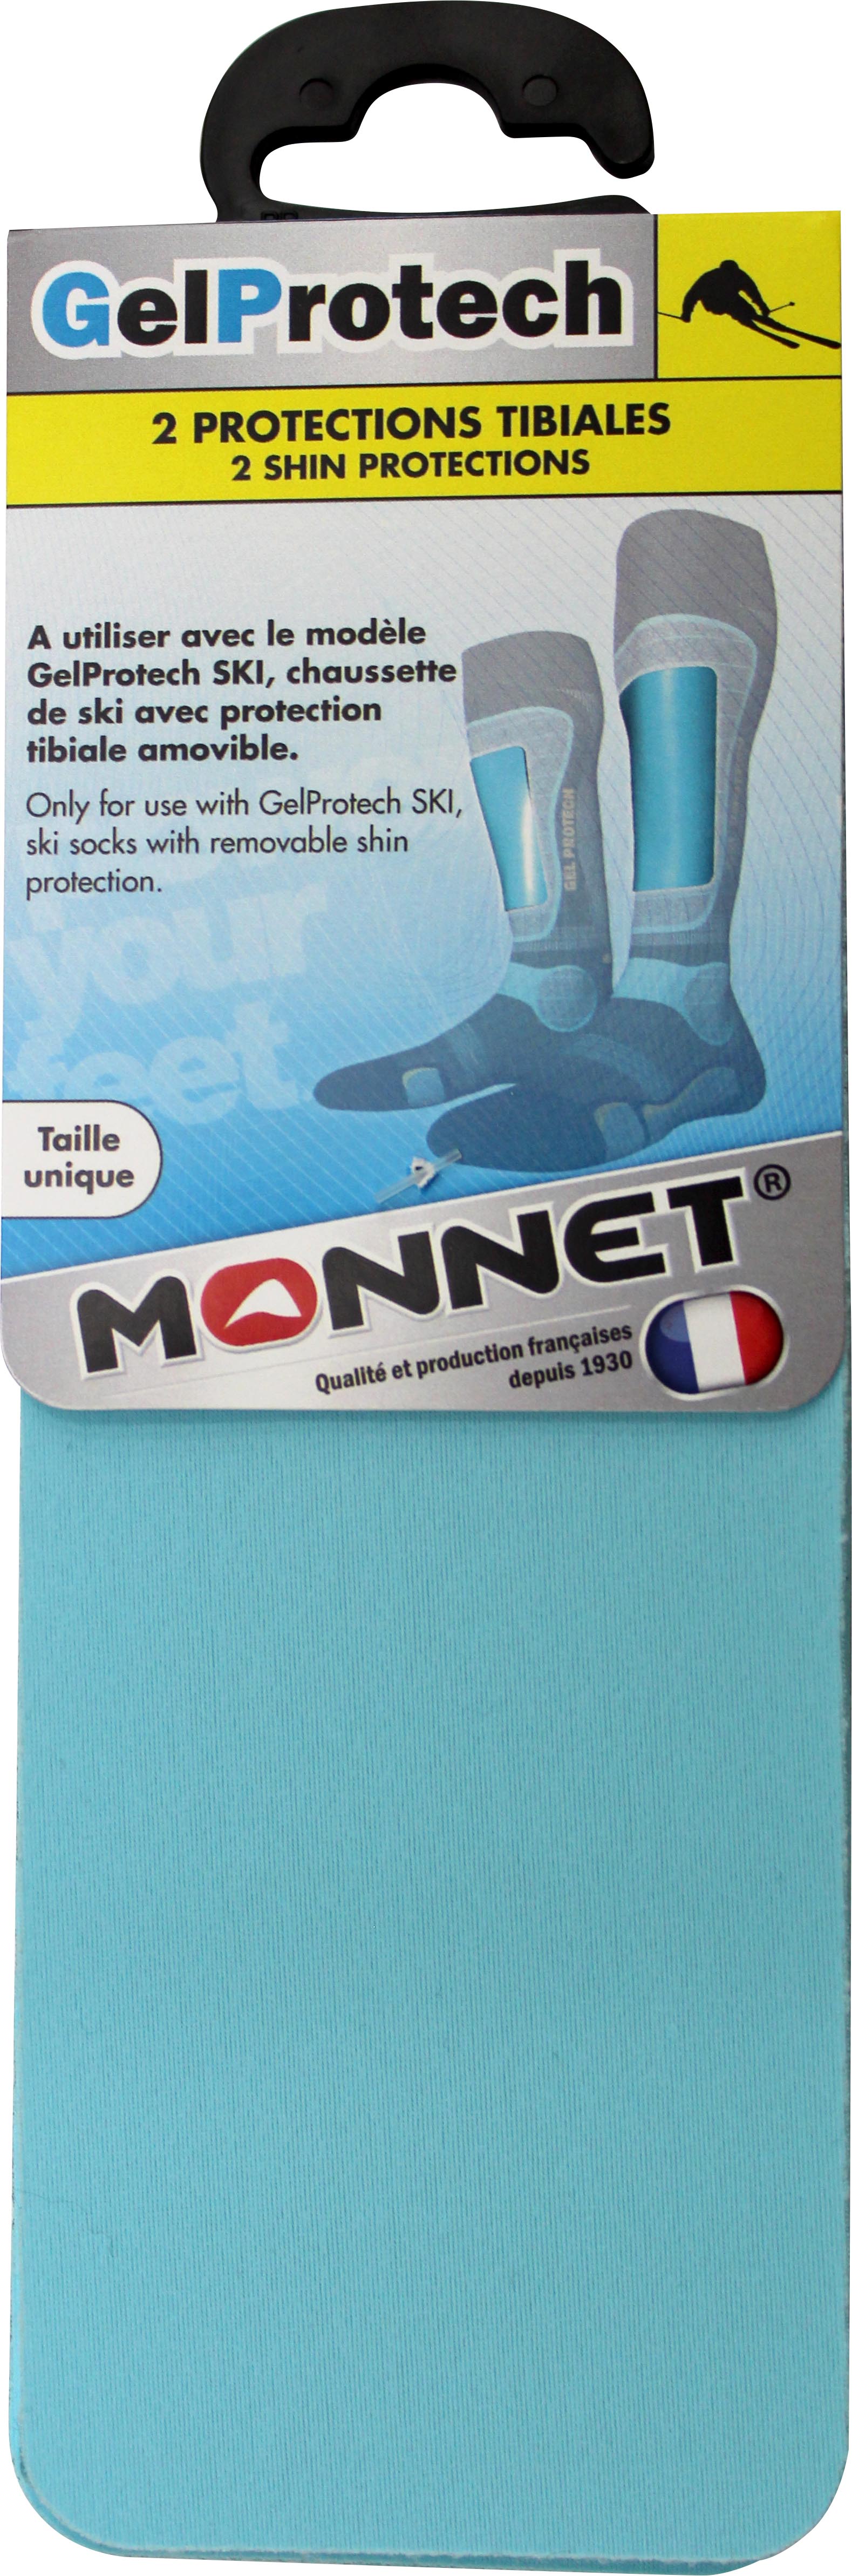 Monnet - Gel de protection tibia